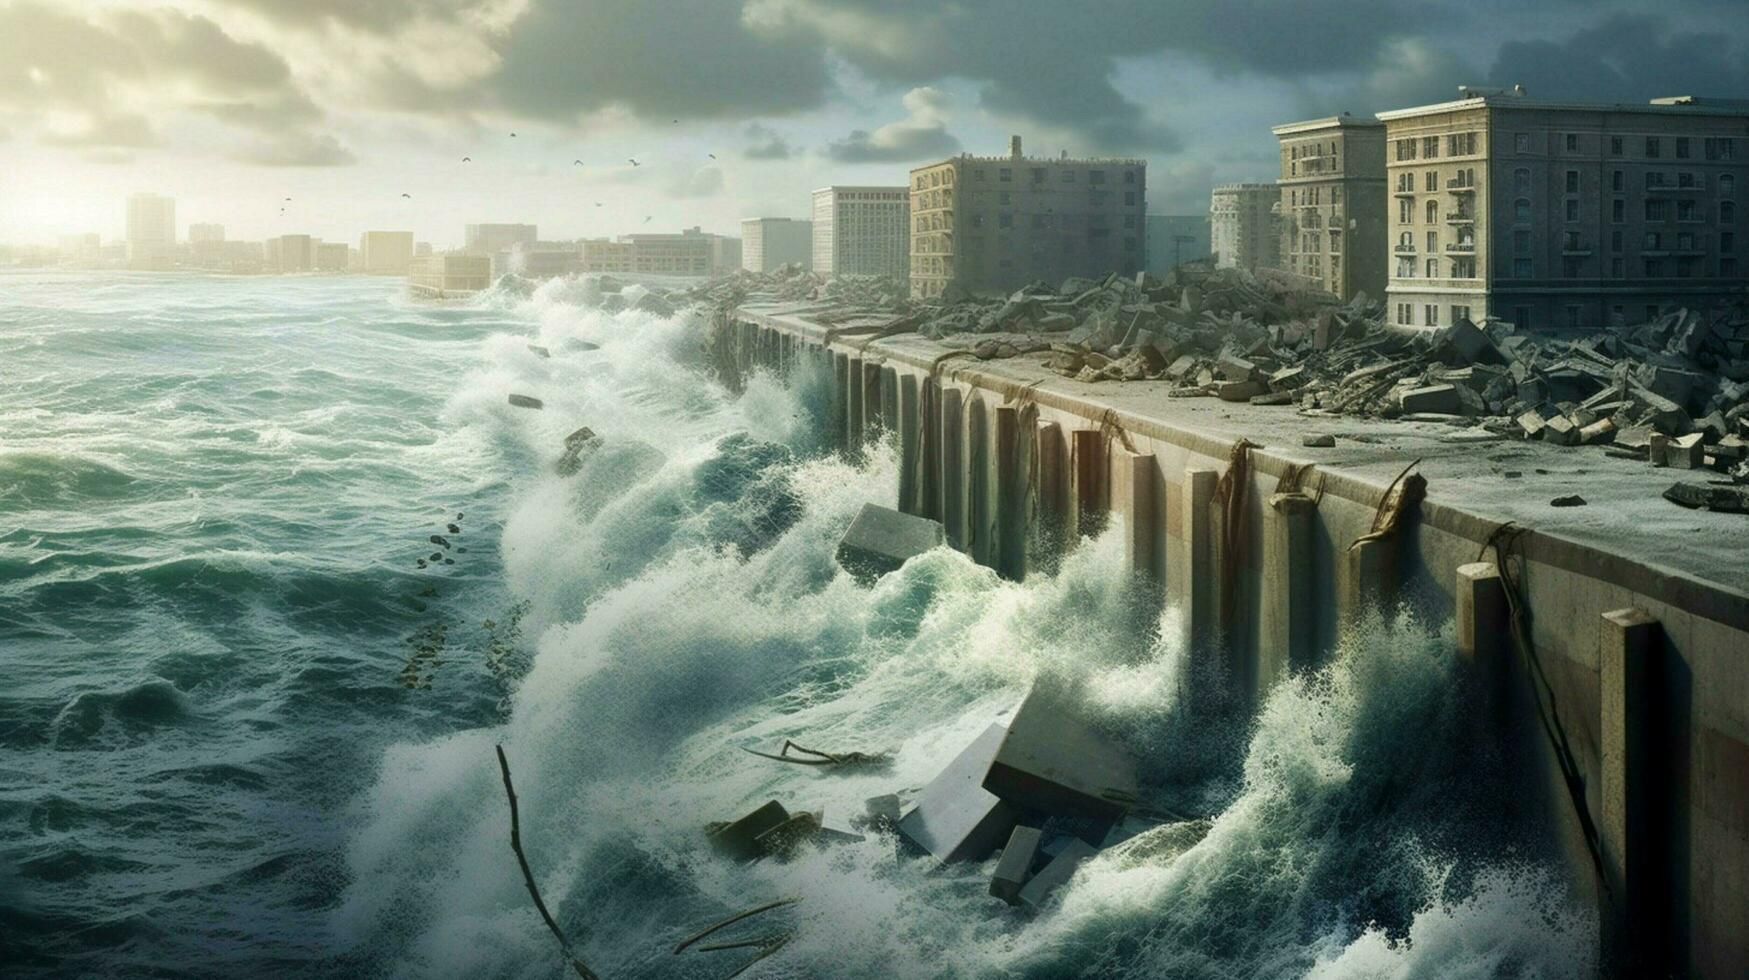 muren van water stijgende lijn van de oceaan naar verwoesten foto